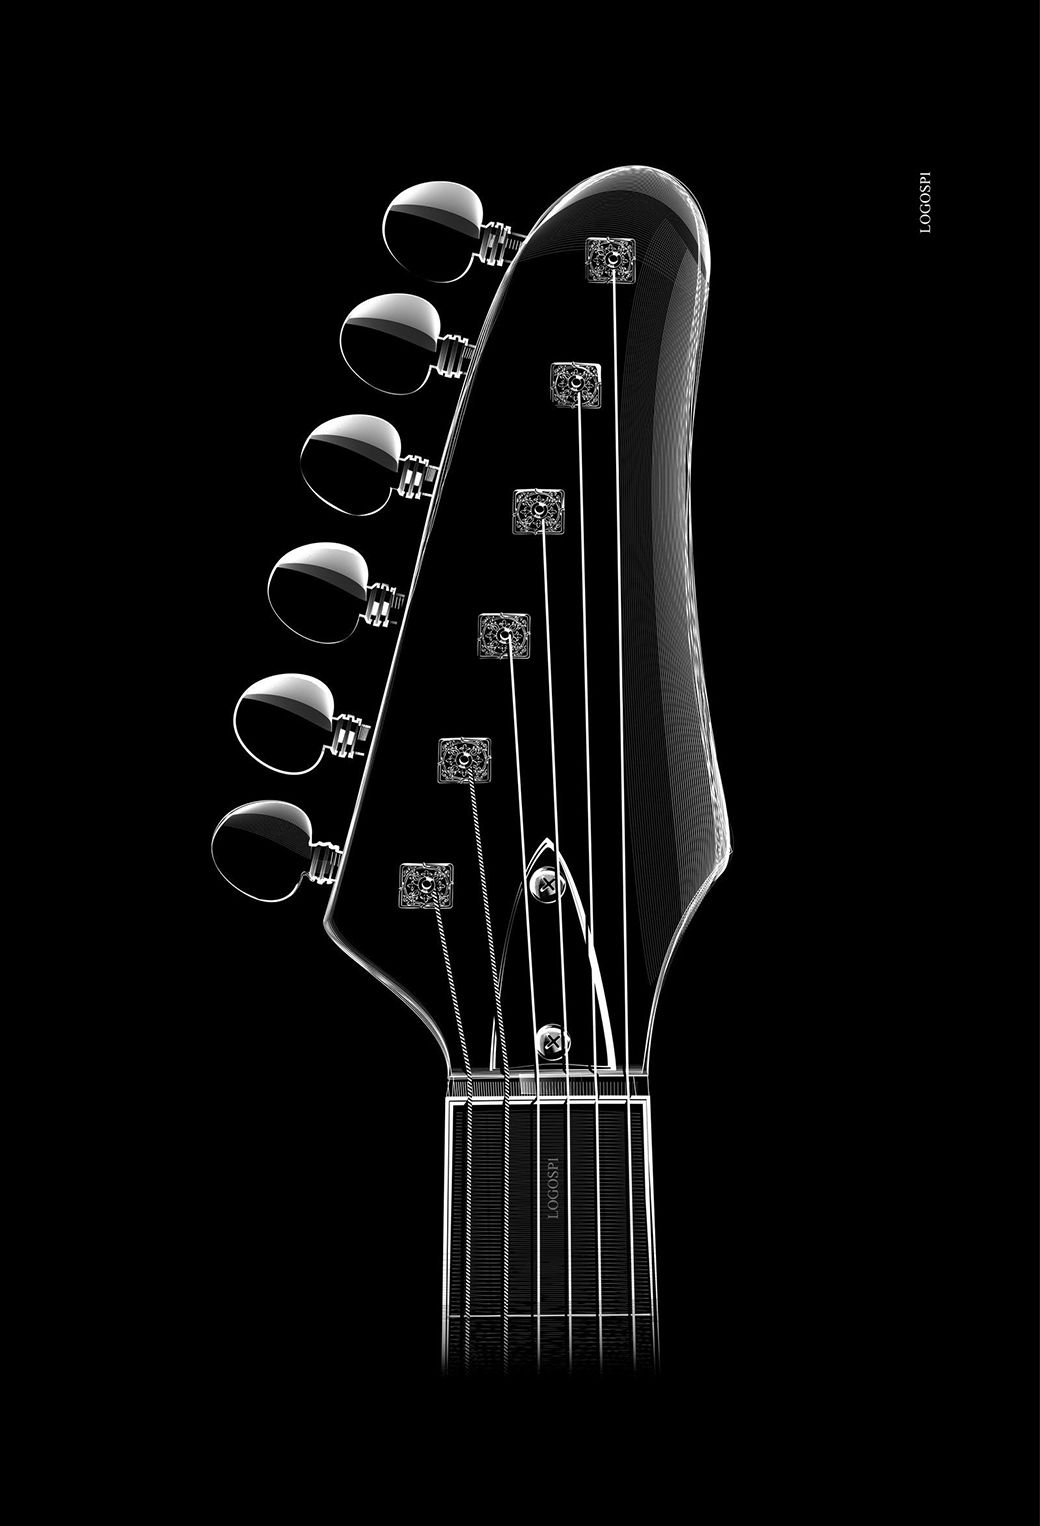 Guitar iPhone Wallpaper